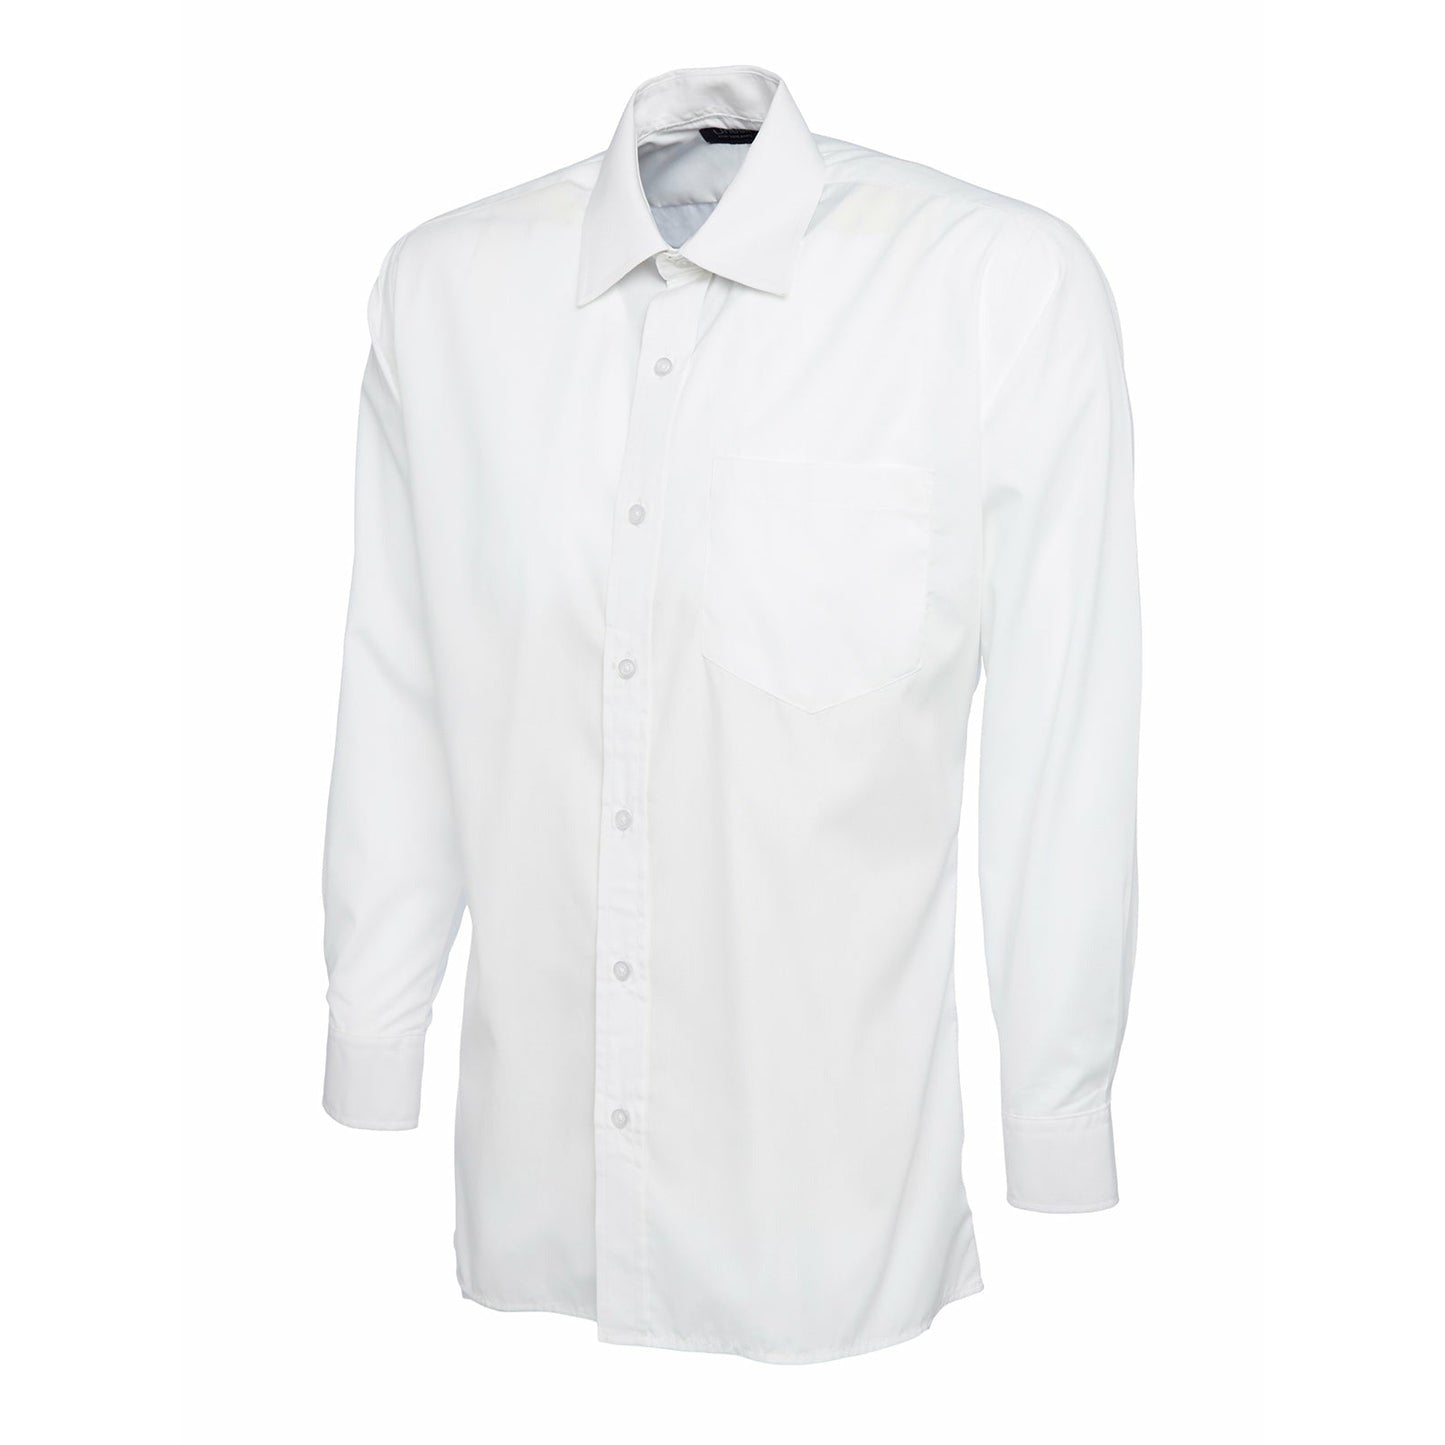 Mens Poplin Full Sleeve Shirt (17 - 19.5) - White